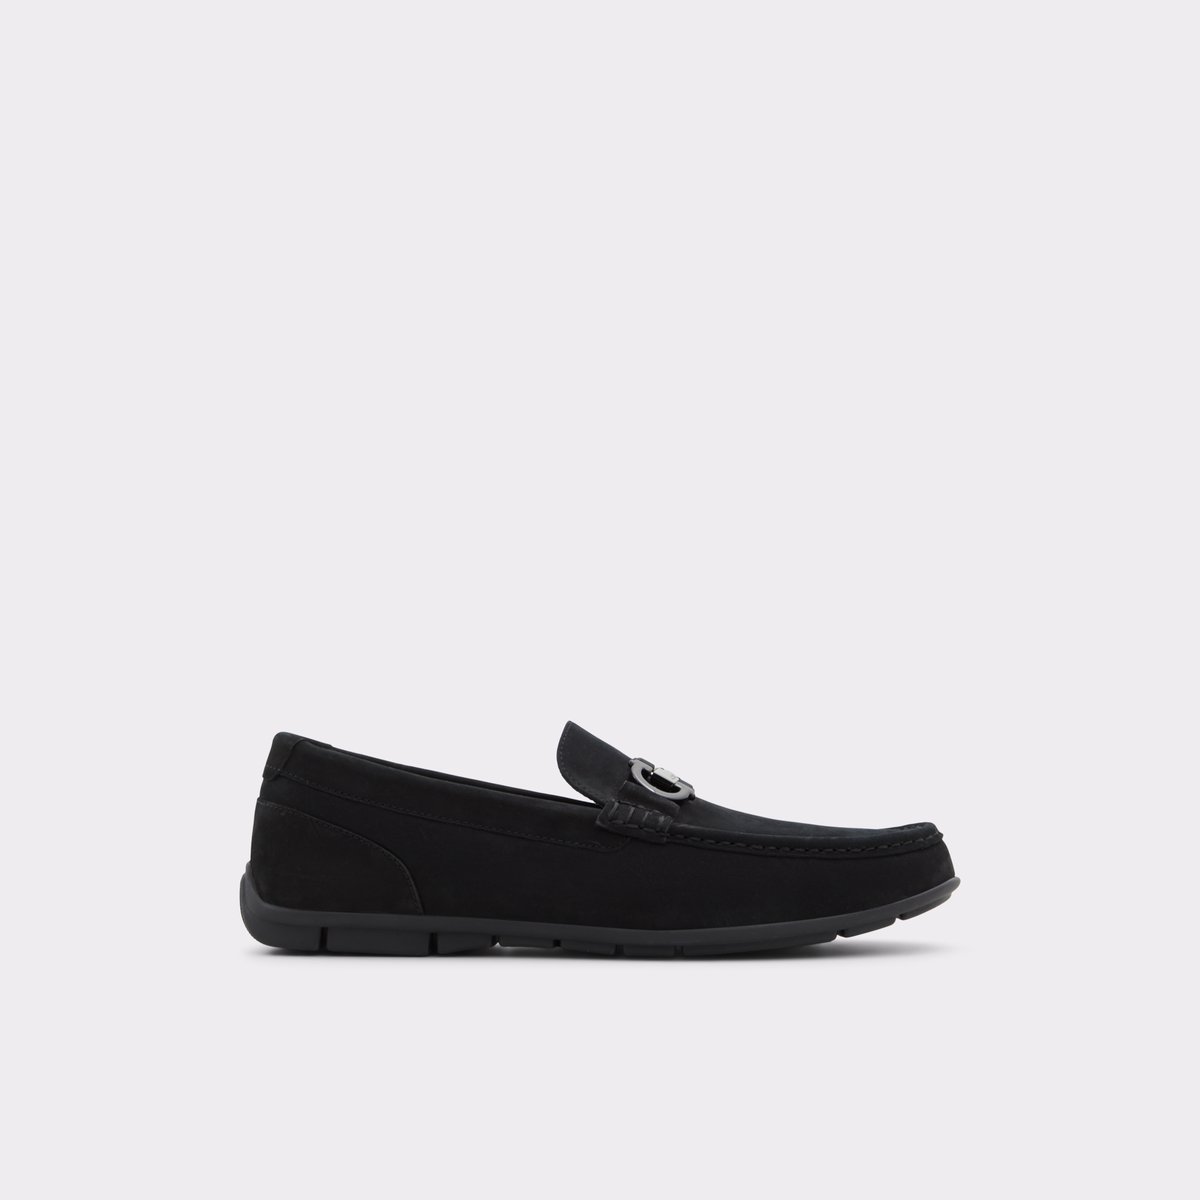 Orlovoflex Black Men's Casual Shoes | ALDO Canada